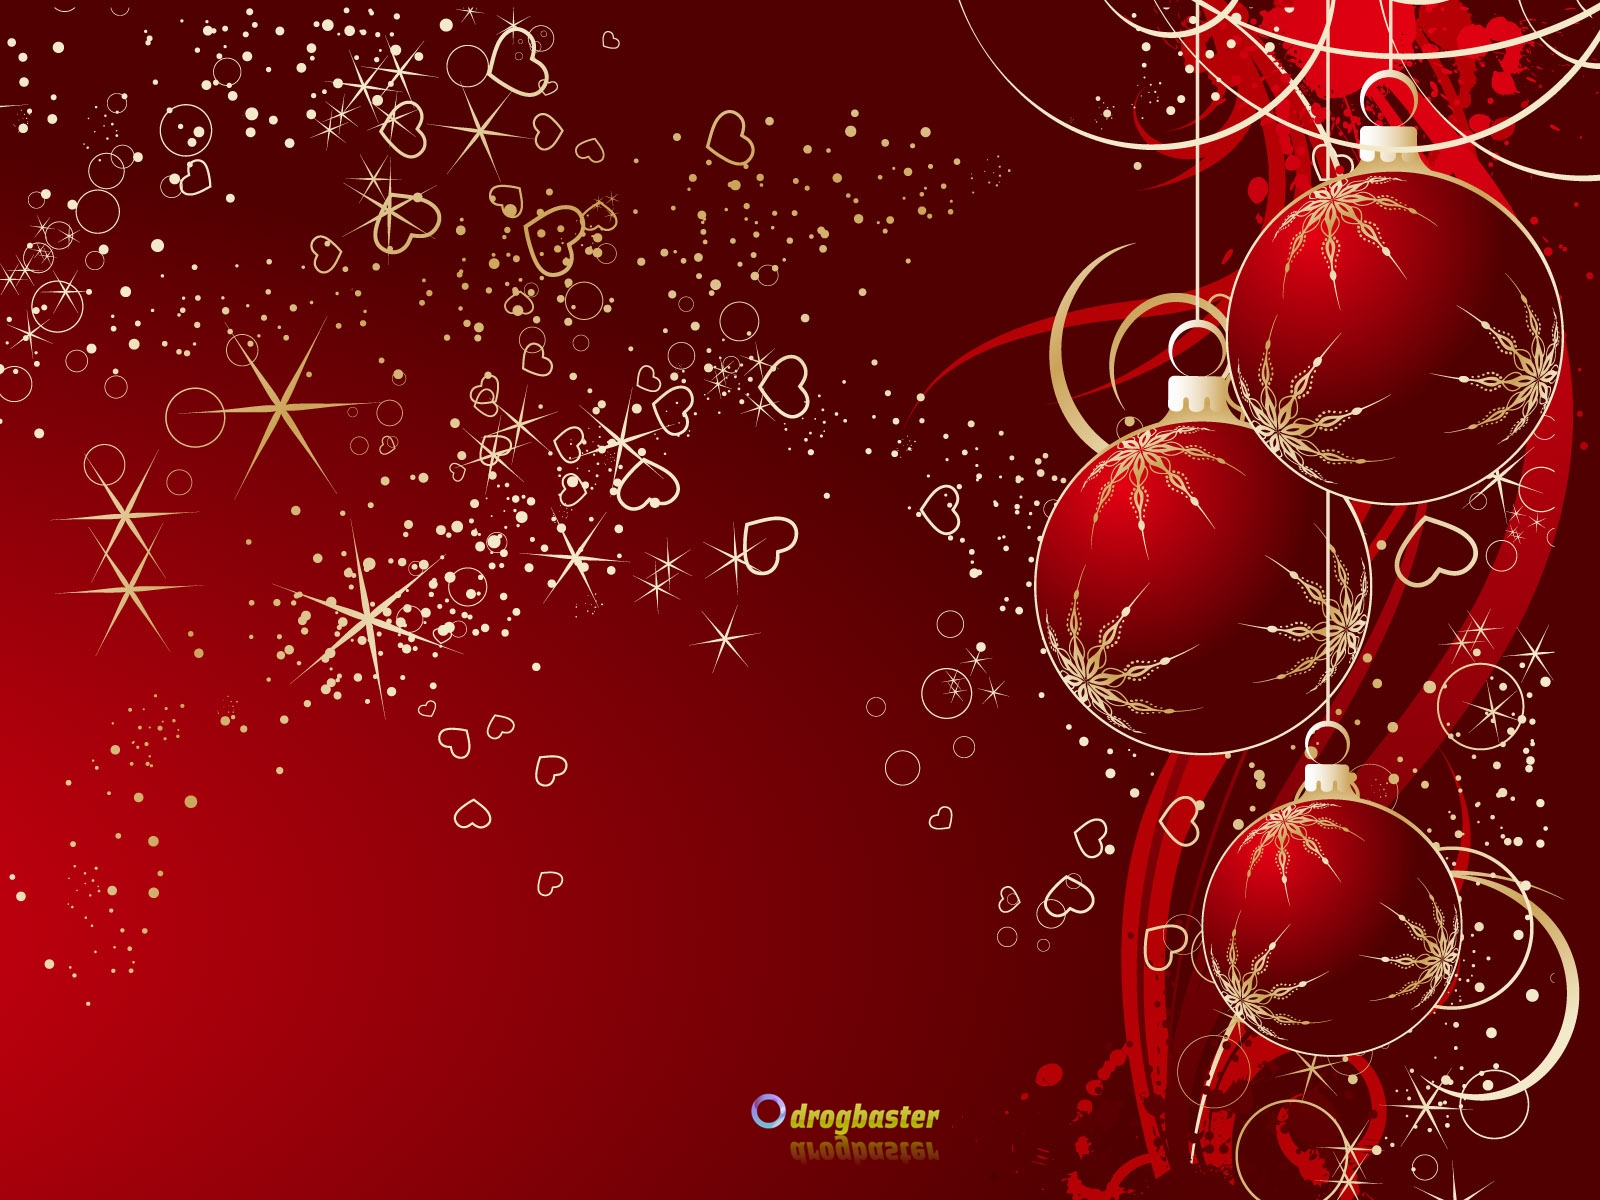 Sfondi Natalizi Per Foto.Sfondi Immagini E Decori Di Natale Grafica Per Cellulare Android